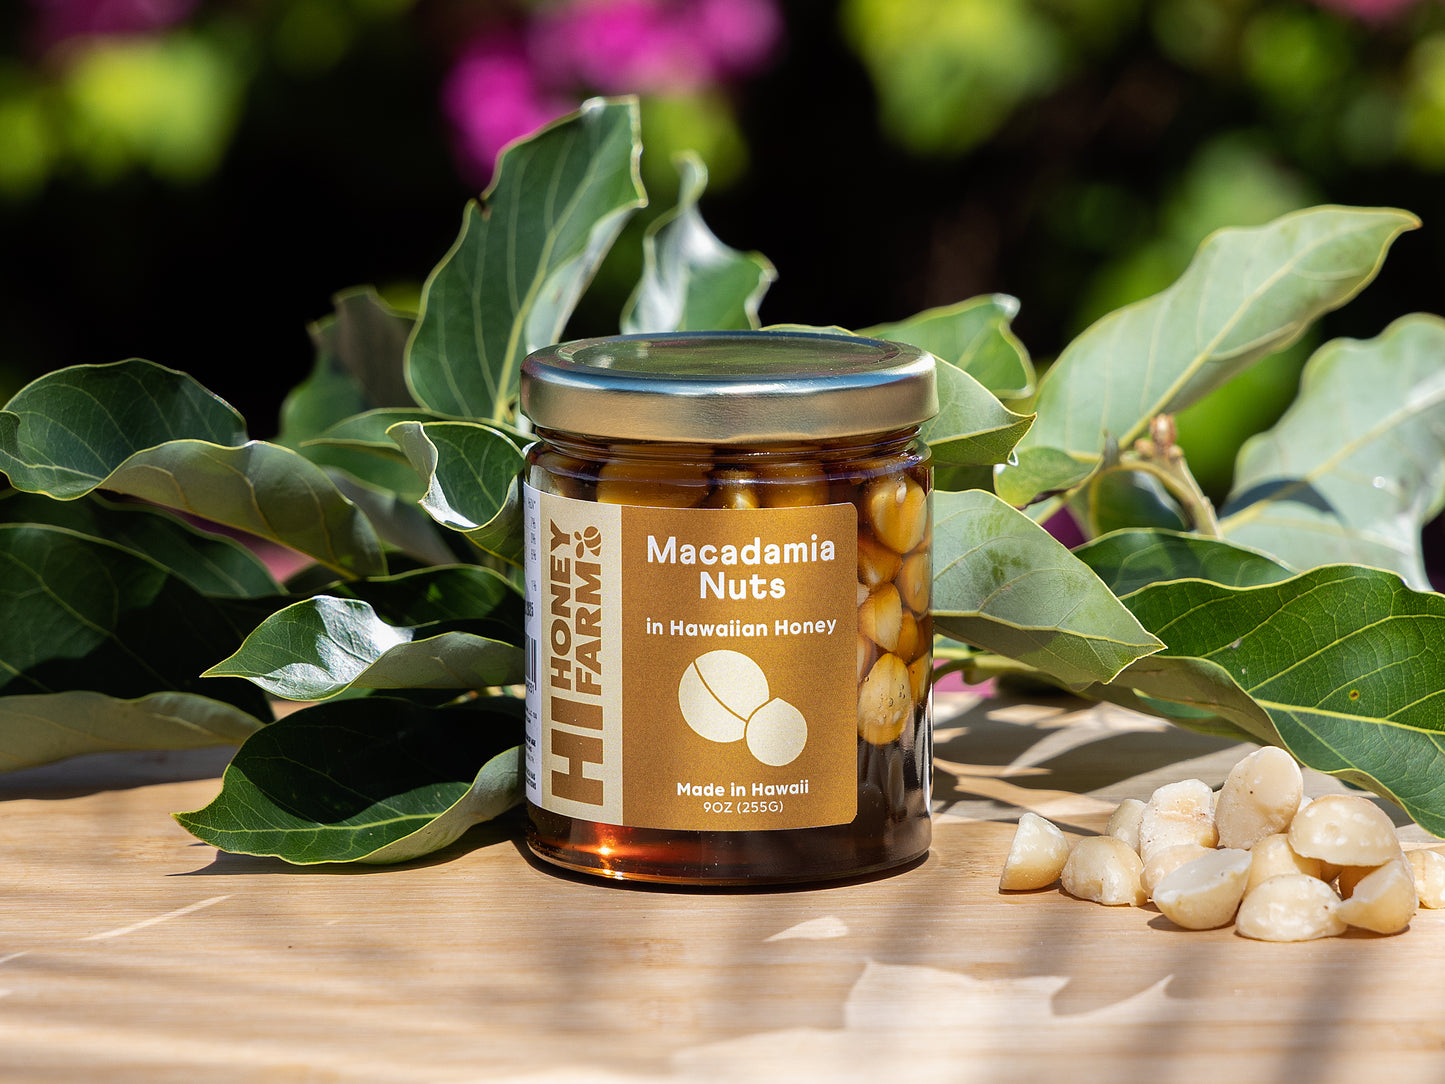 Macadamia Nuts in Hawaiian Honey